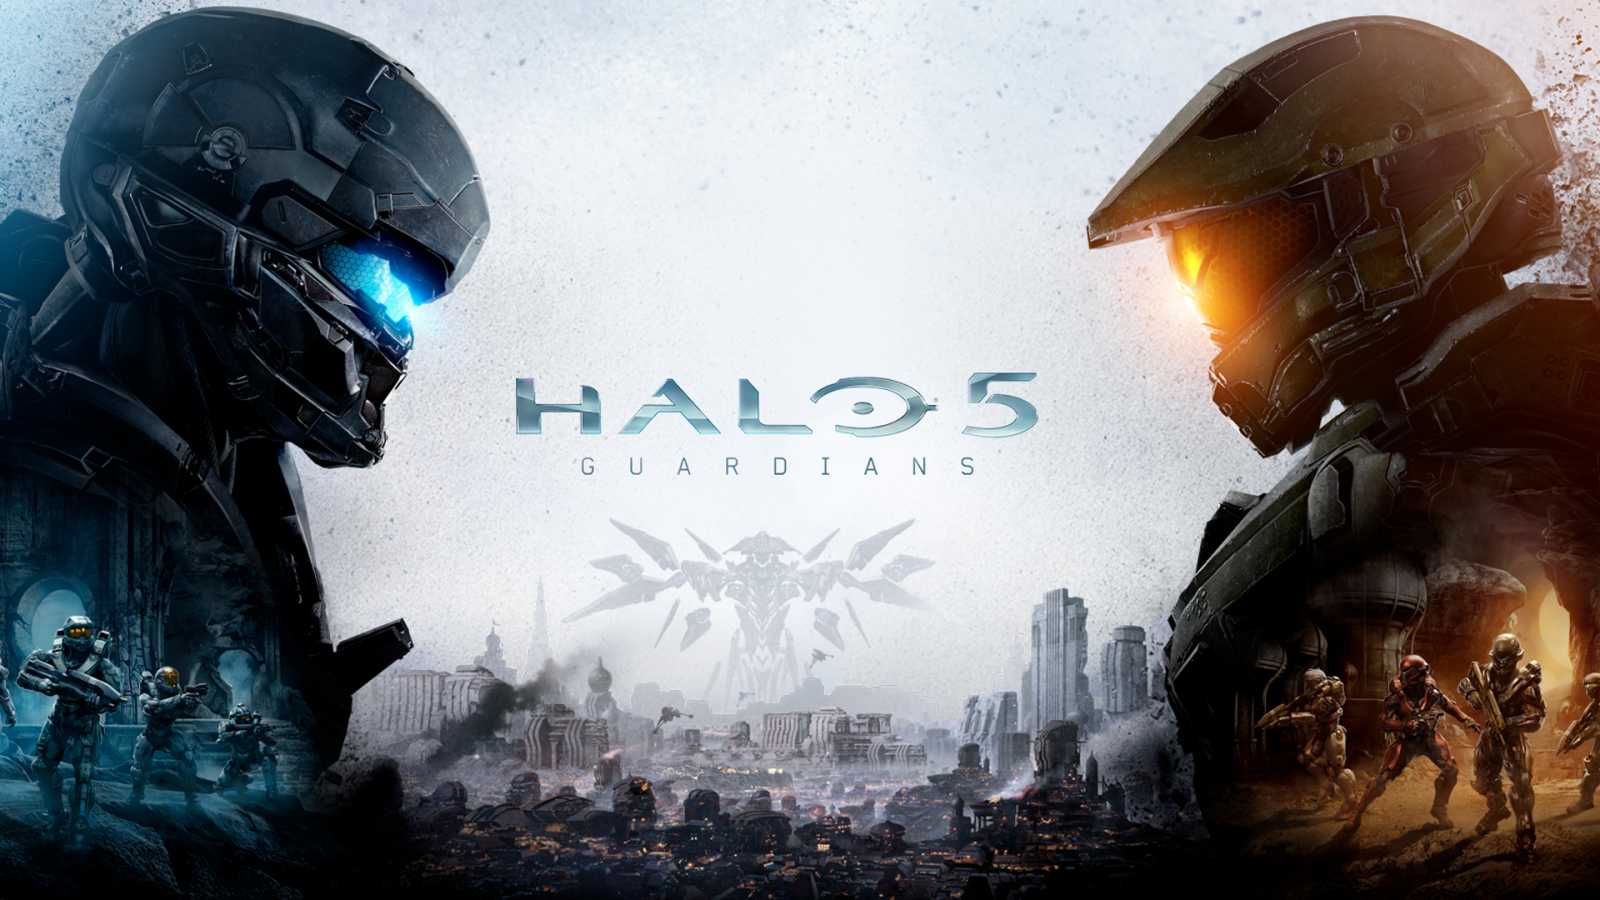 V říjnu vedl prodeje konzolí Xbox One, může za to Halo 5